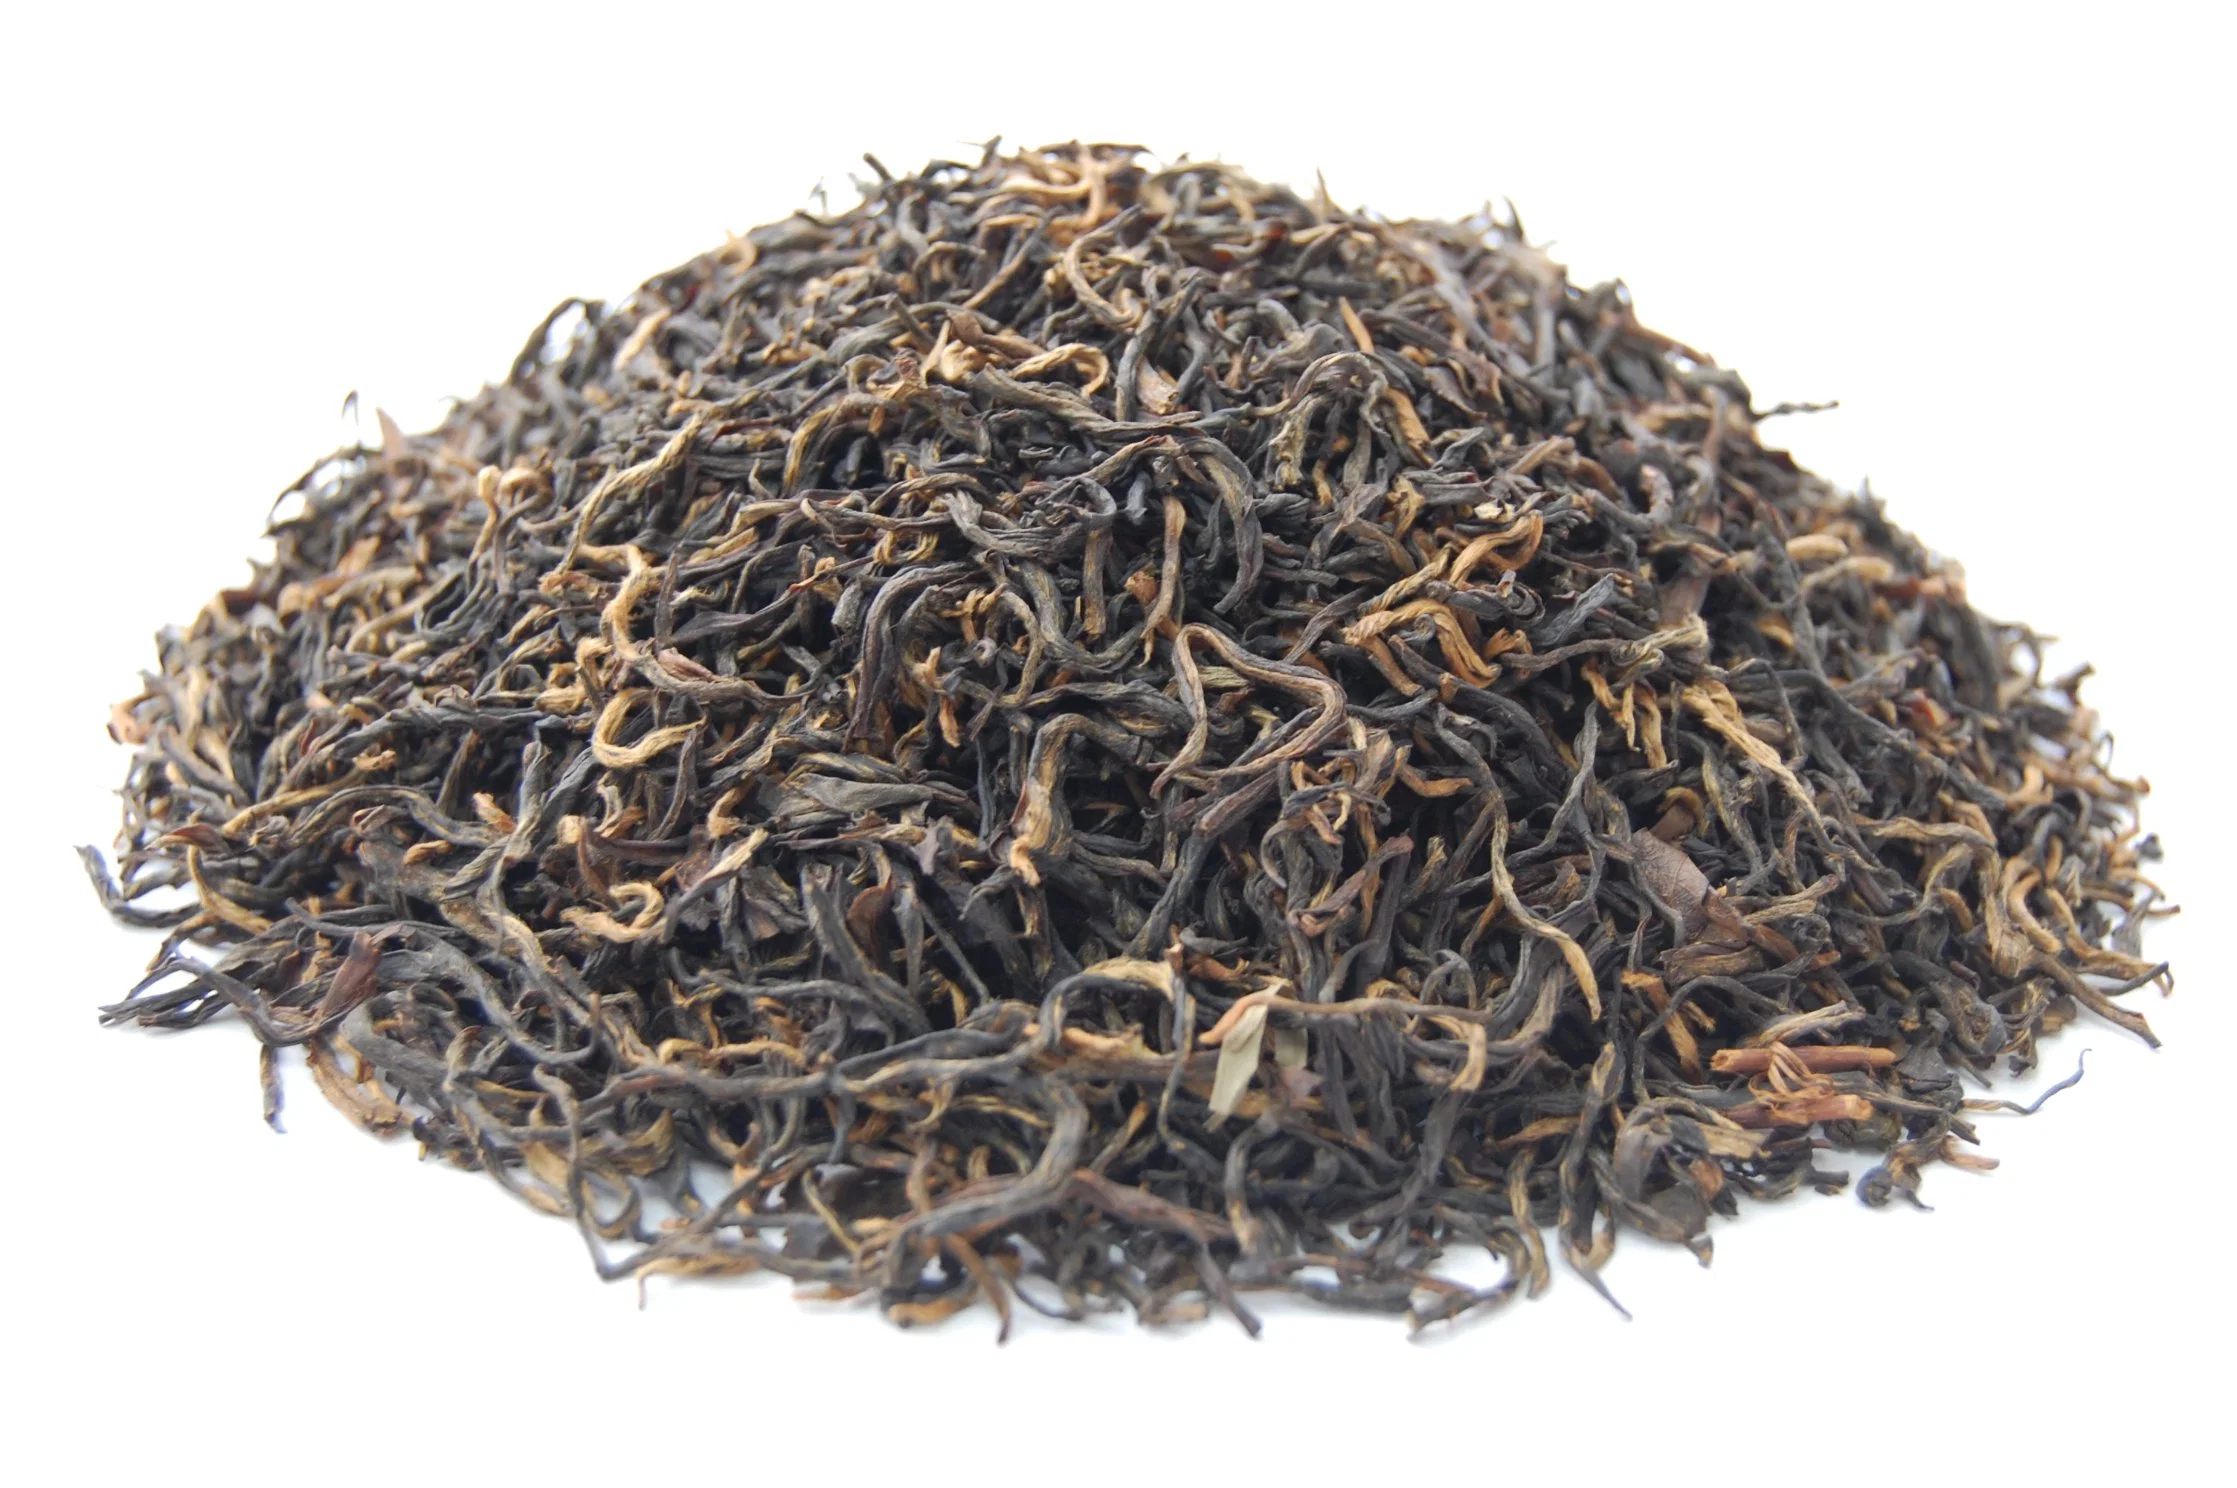 Chinese Premium Organic Lapsang Souchong thé noir fermenté